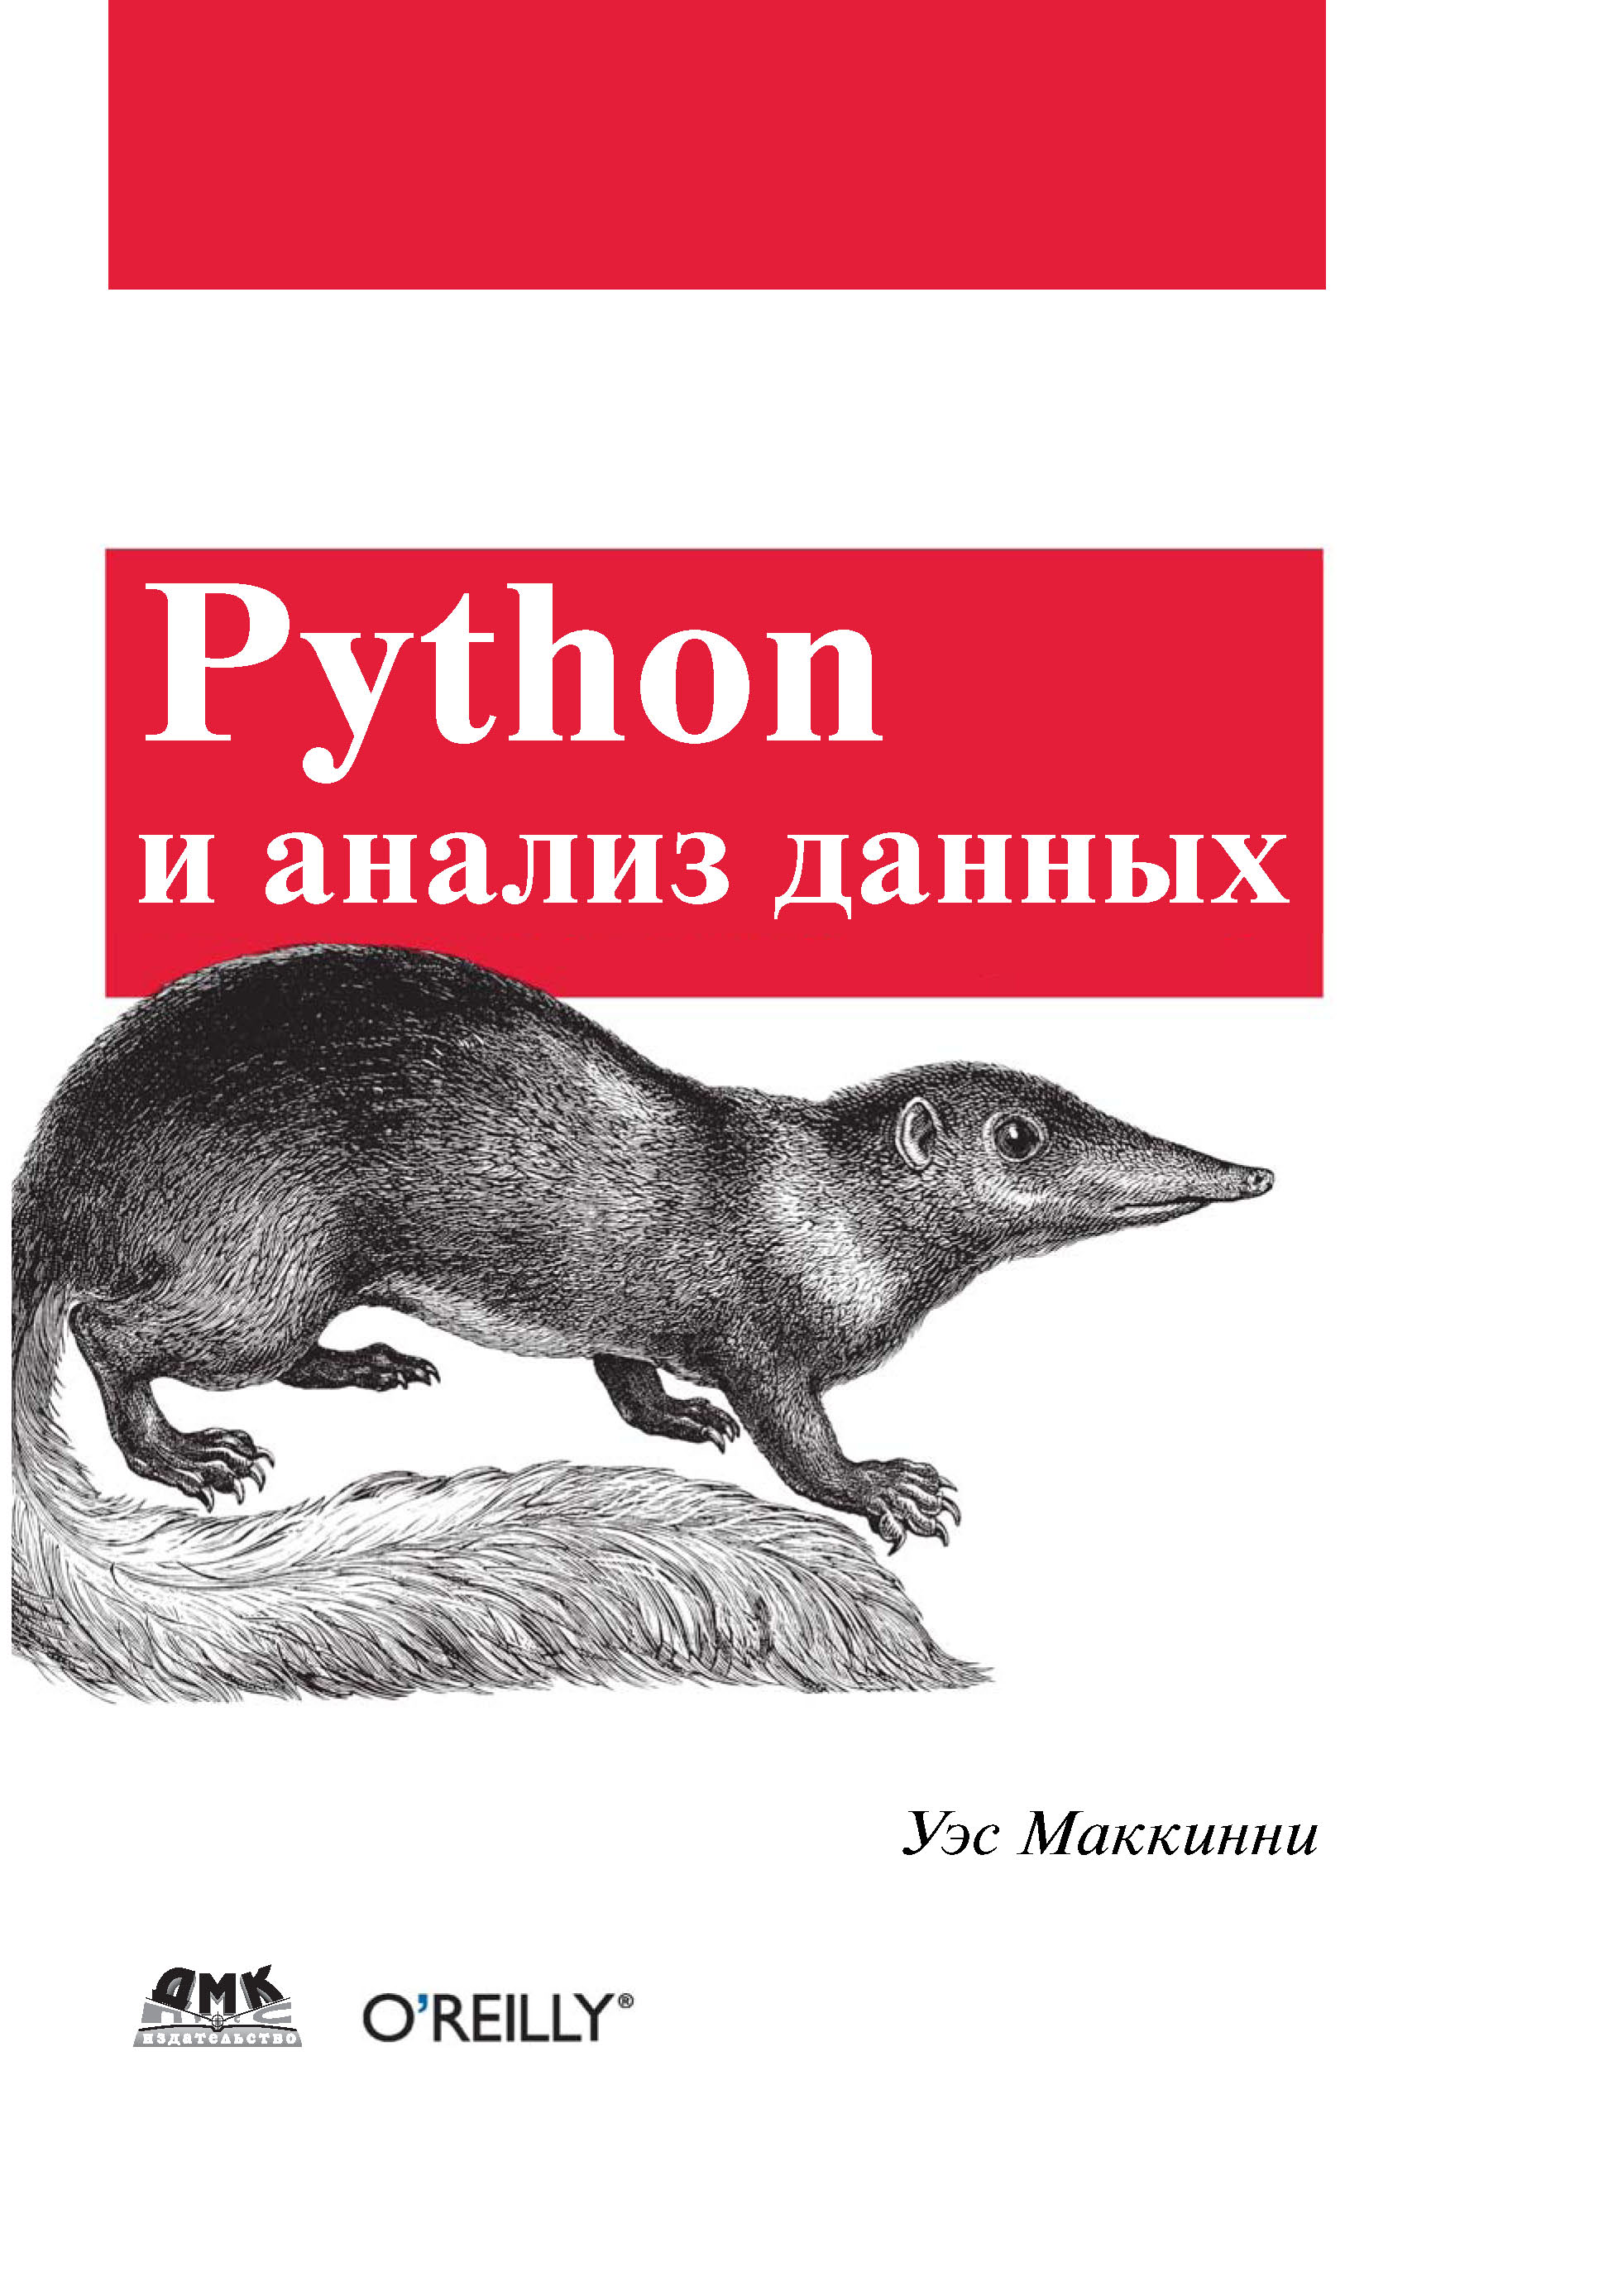 Книга  Python и анализ данных созданная Уэс Маккинни, А. А. Слинкин может относится к жанру базы данных, зарубежная компьютерная литература, программирование. Стоимость электронной книги Python и анализ данных с идентификатором 22805830 составляет 890.00 руб.